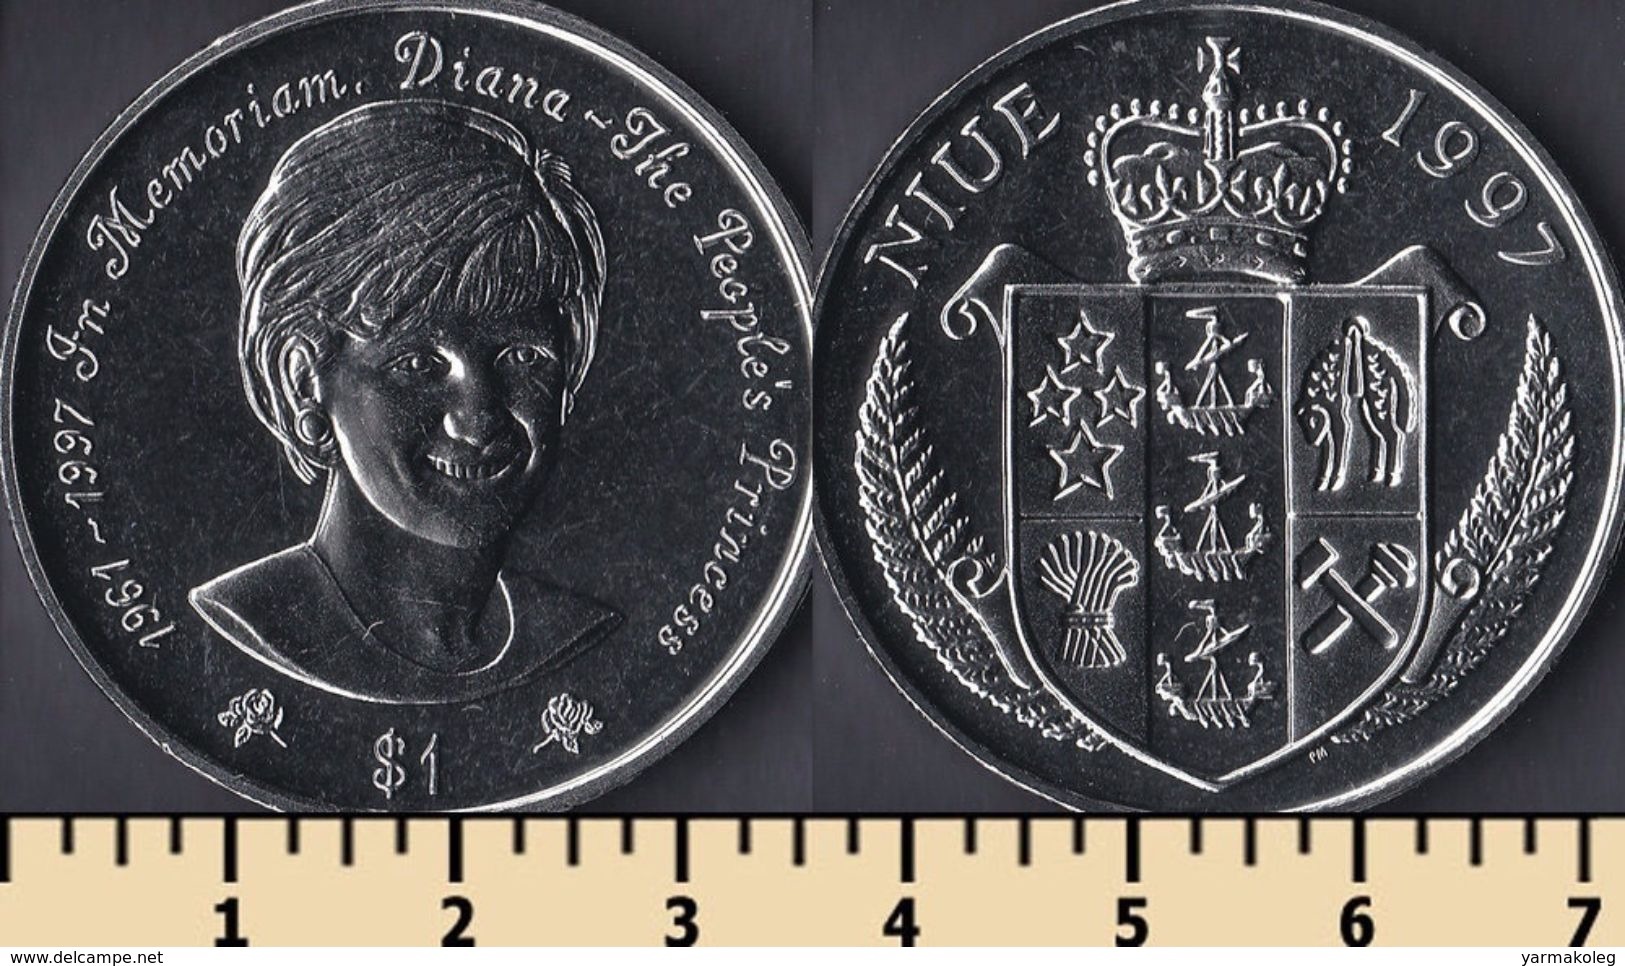 Niue 1 Dollar 1997 - Niue